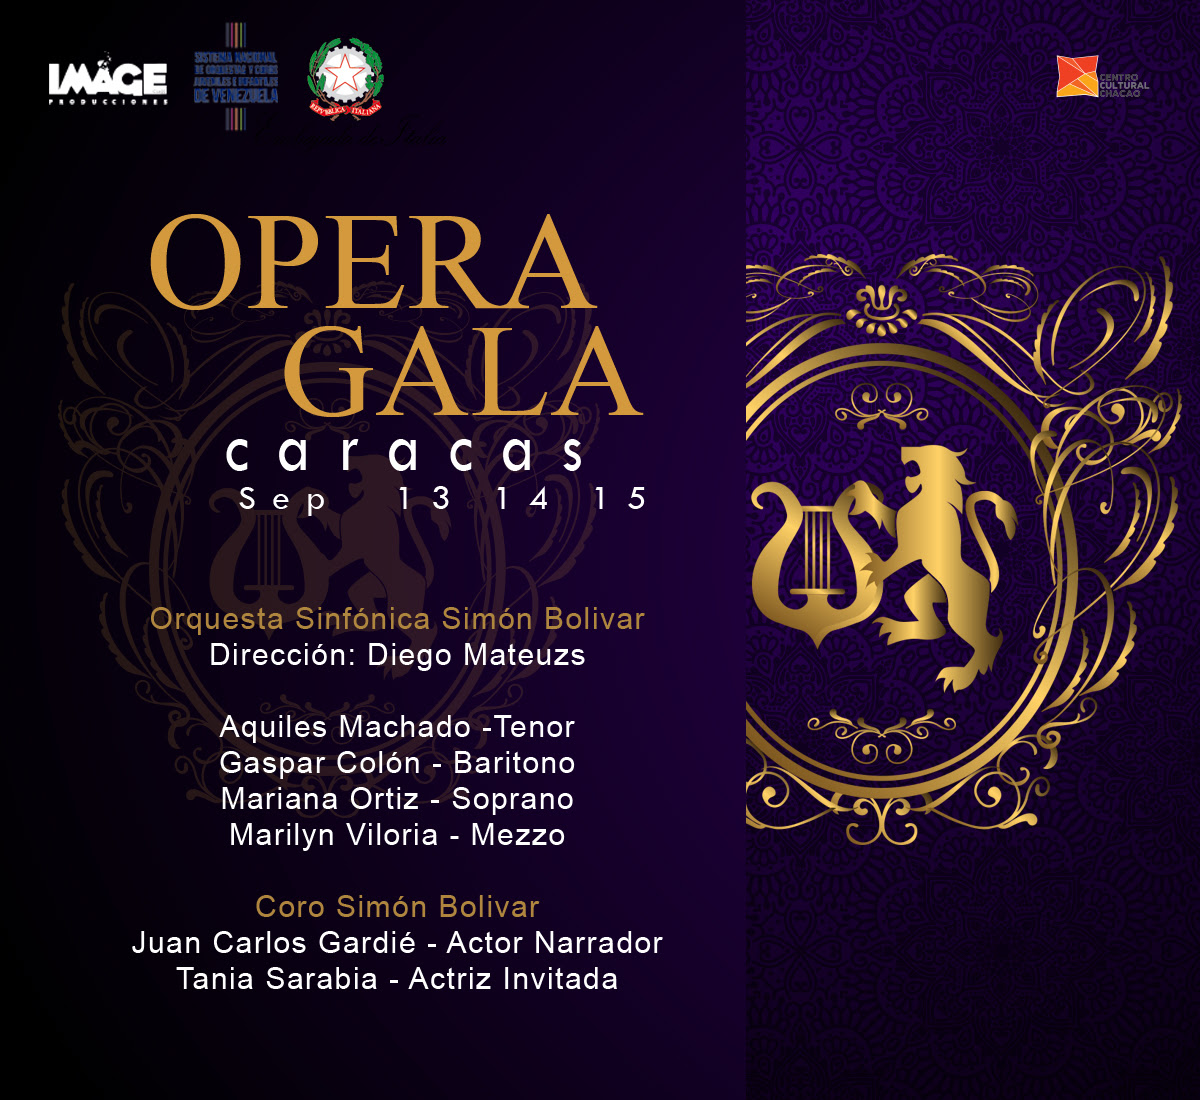 OPERA GALA CARACAS: Un amor trasatlántico en clave operística llega al Teatro de Chacao para 3 únicas funciones